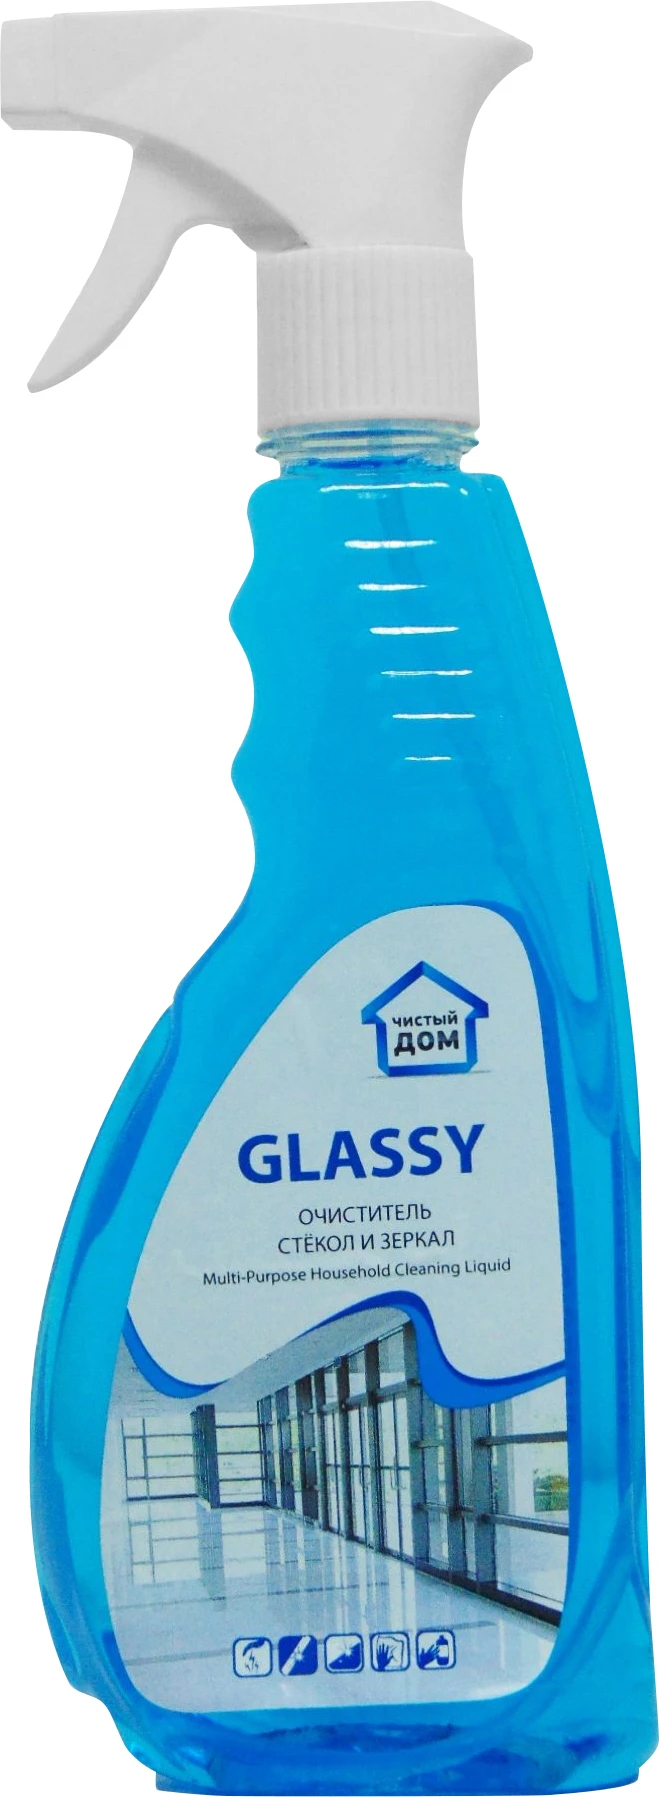 Очиститель для стекол Чистый дом Glassy 0,5 л, с триггером